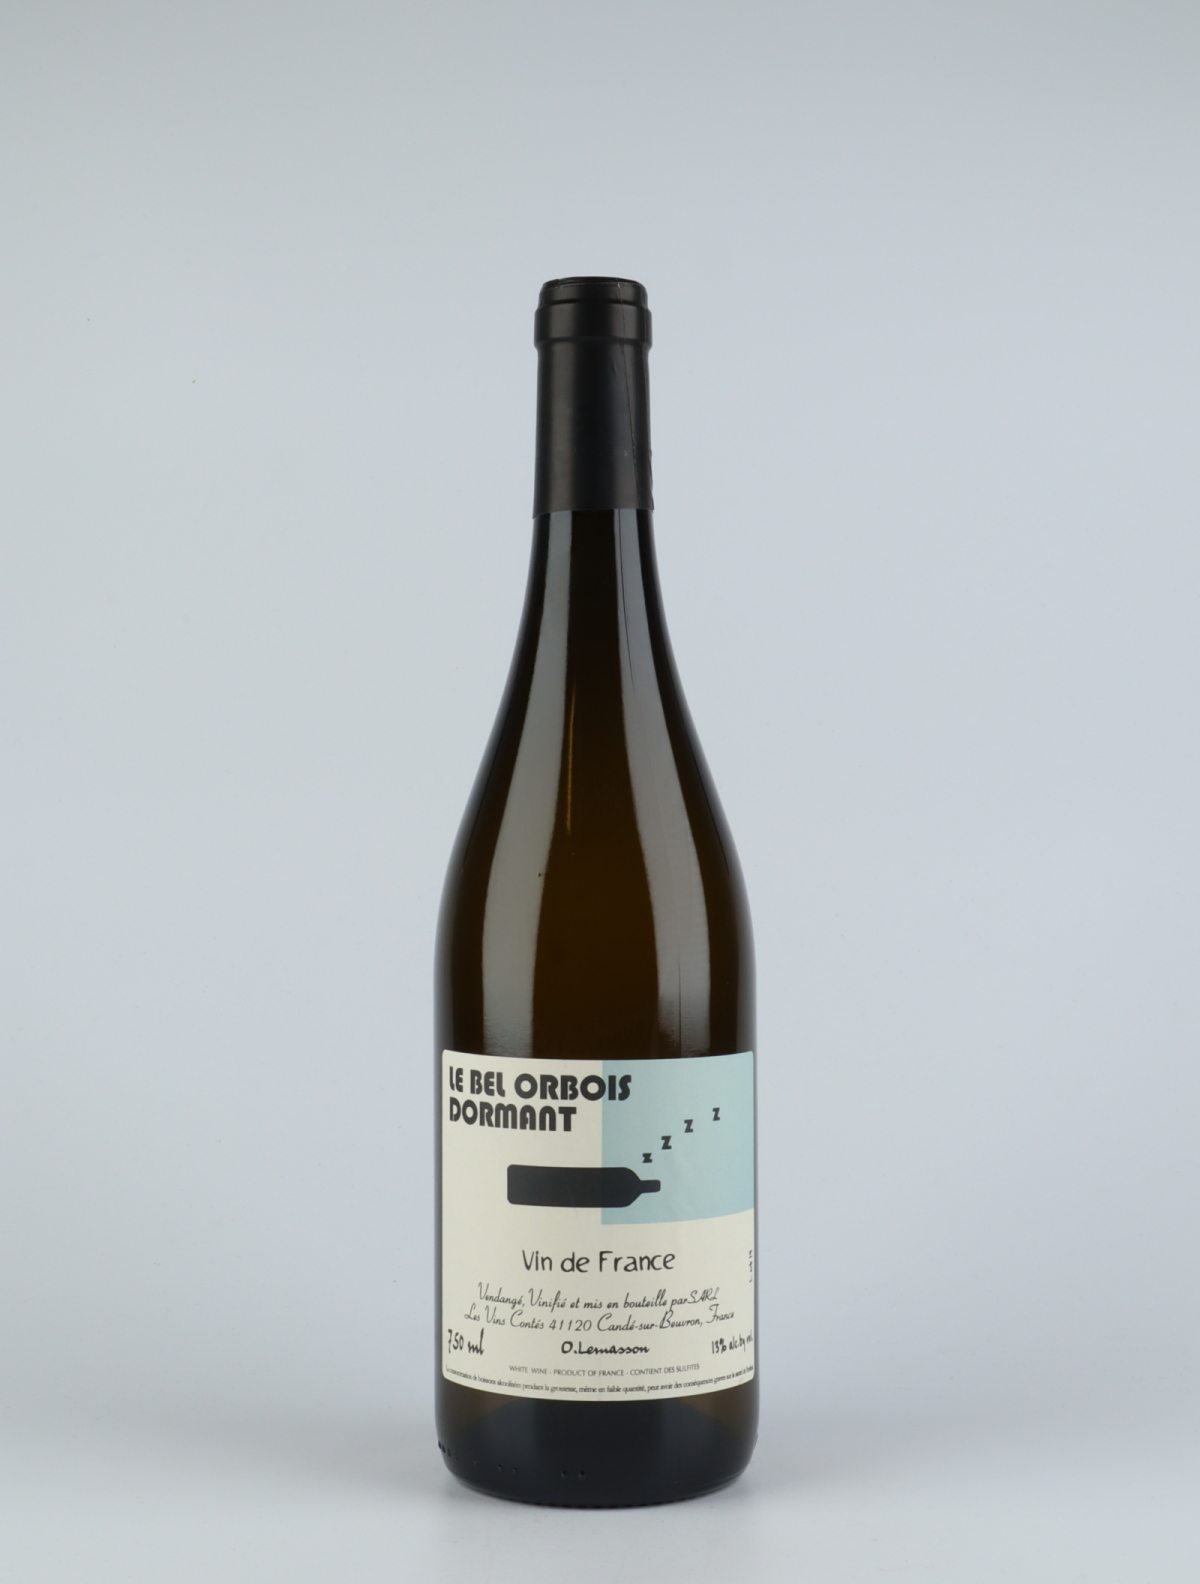 A bottle N.V. Le Bel Orbois Dormant White wine from Olivier Lemasson, Loire in France